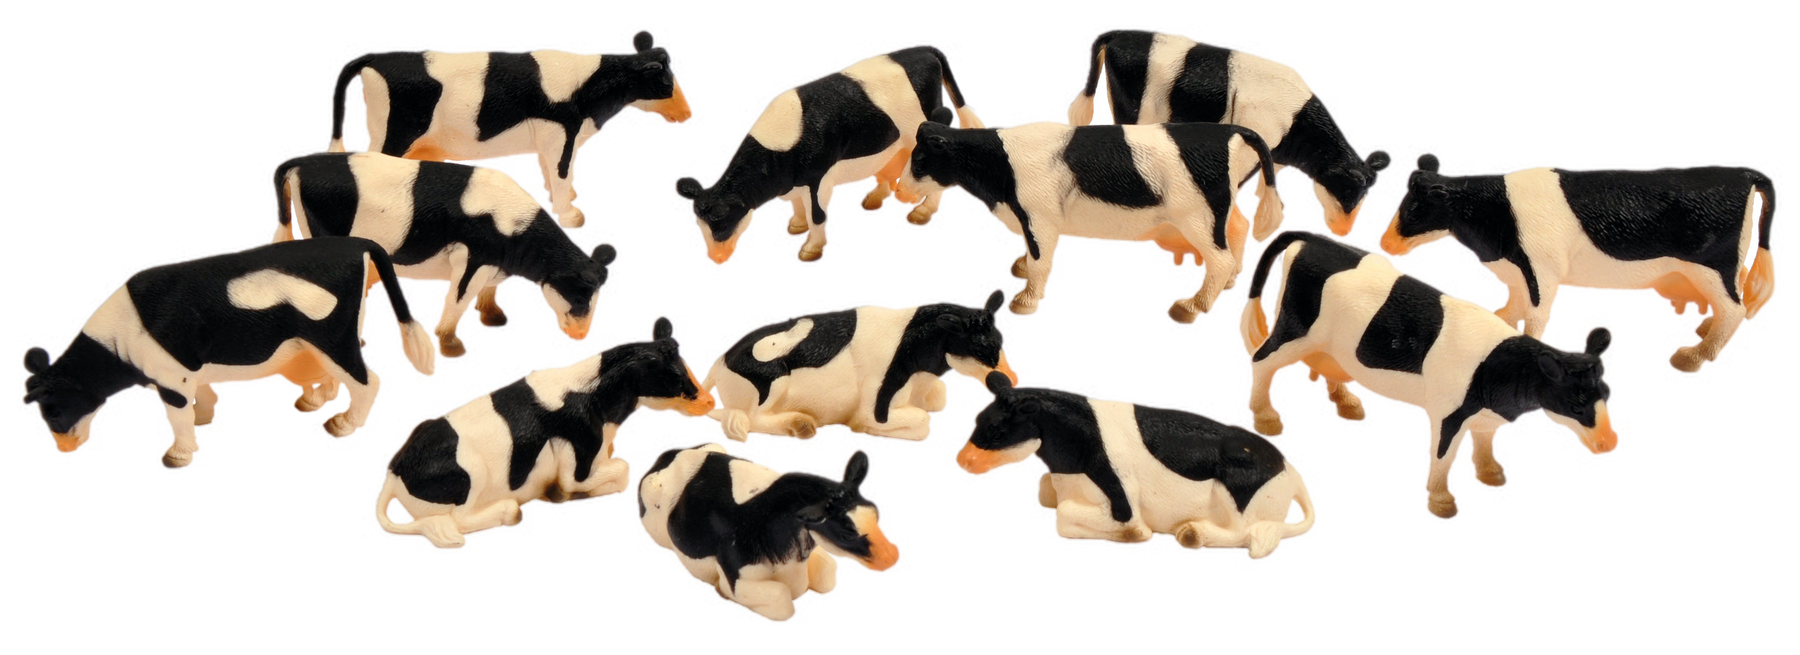 Cows (12x) 1:32